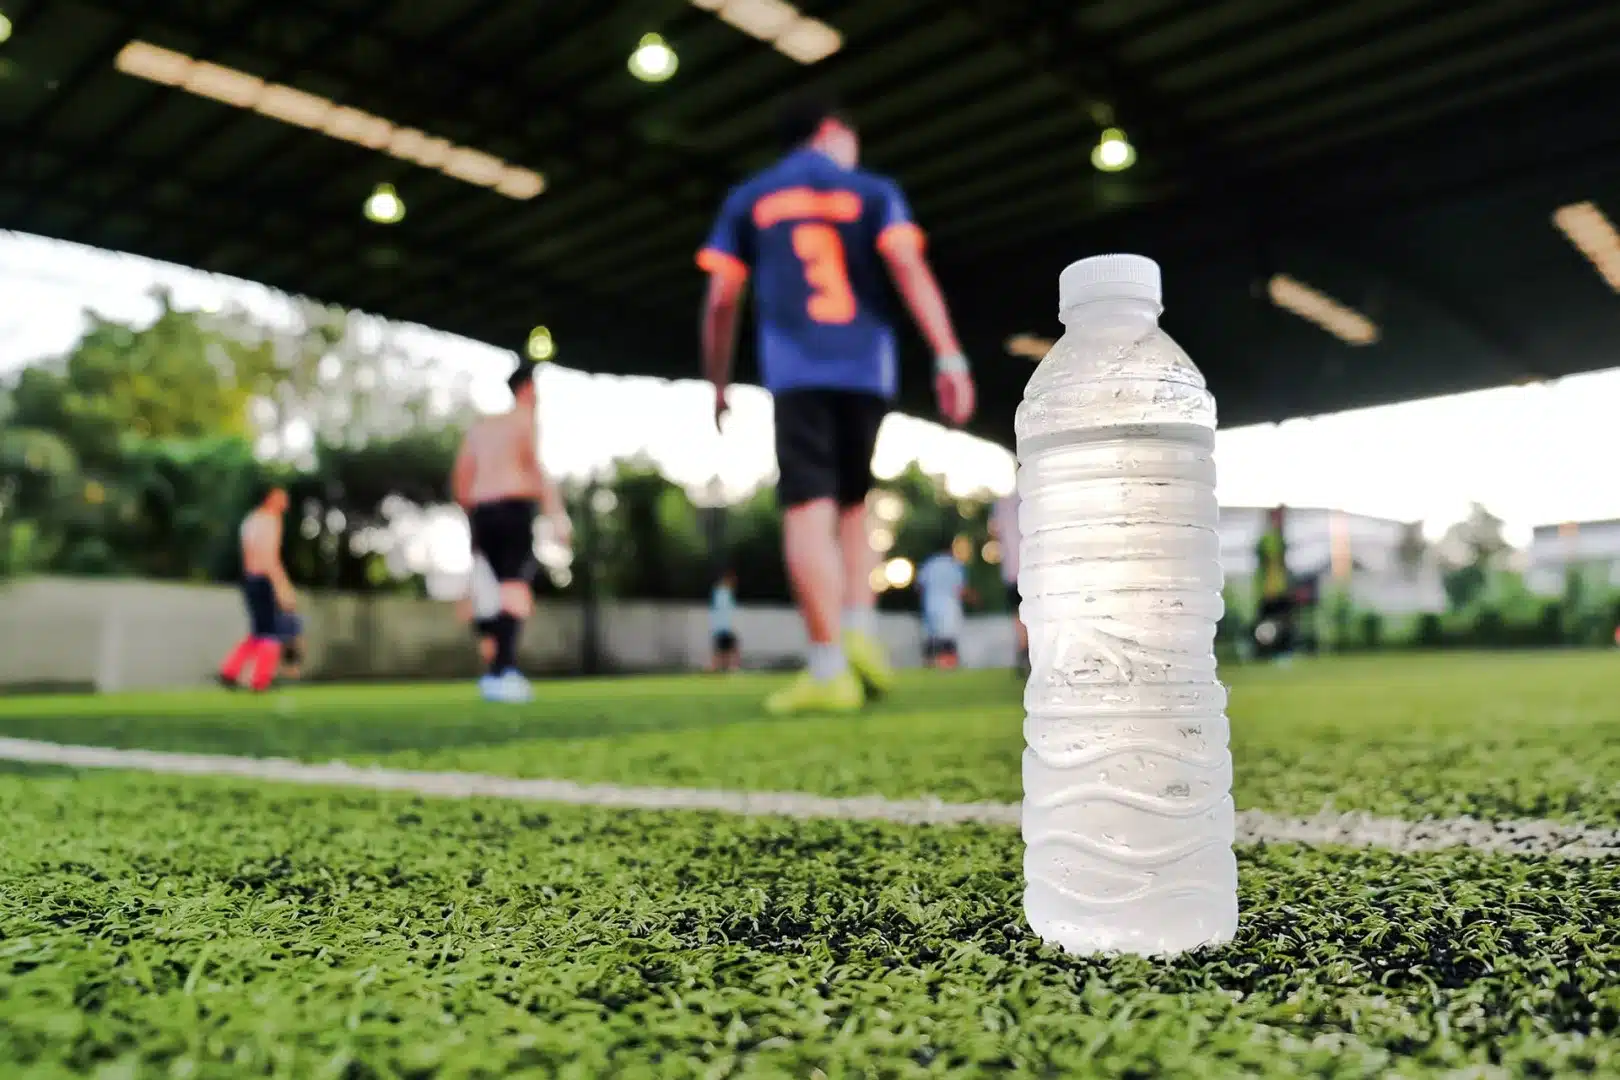 Fußballfeld mit Spielern, im Vordergrund steht eine Wasserflasche.